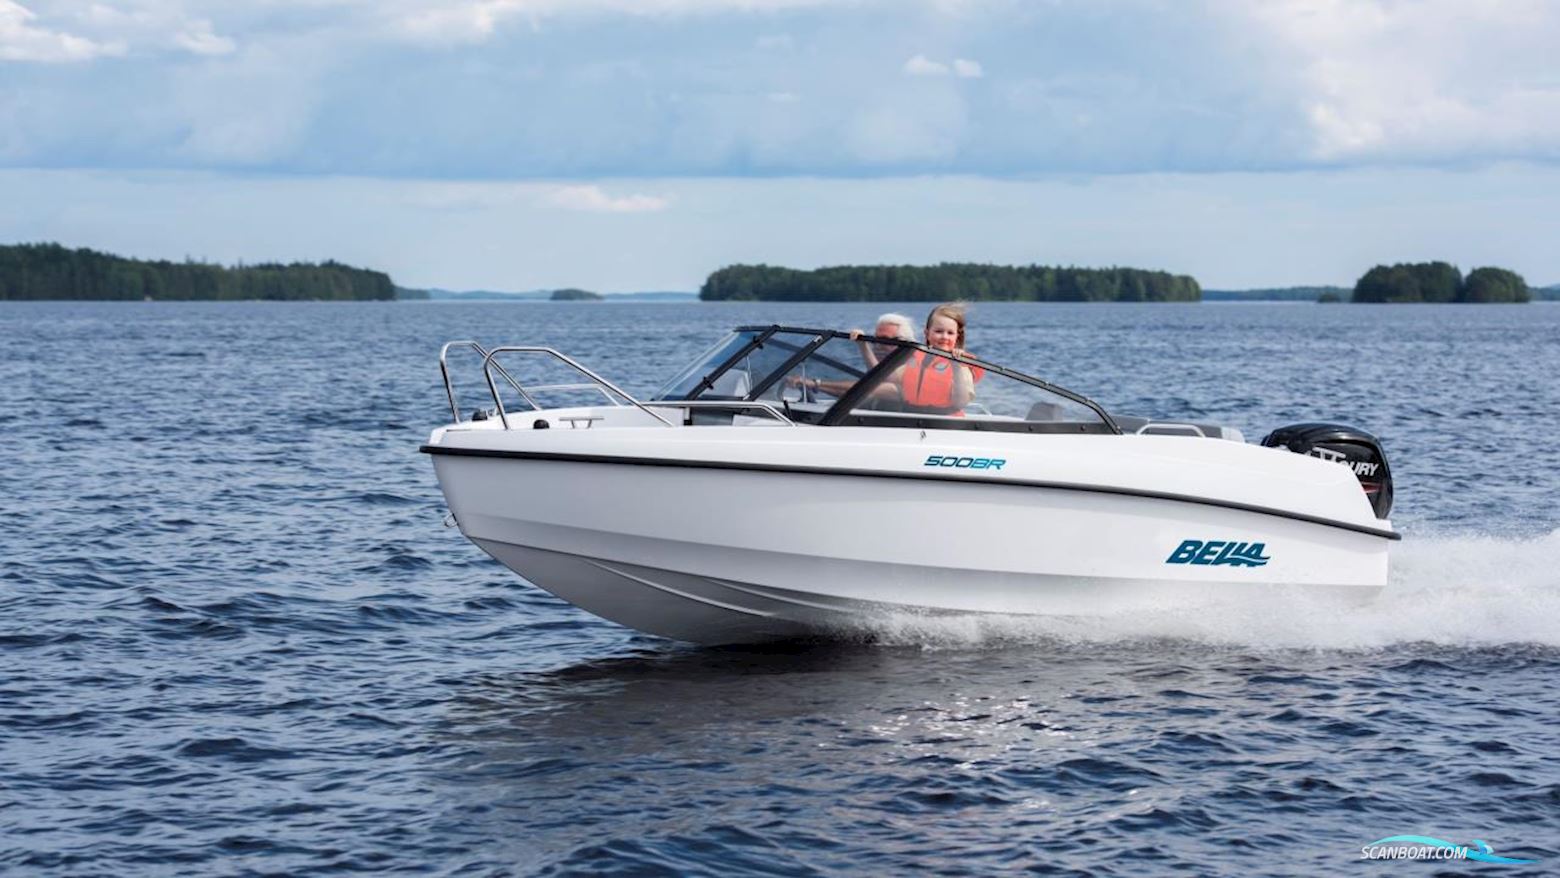 Bella 500 BR Motorbåt 2022, med Mercury motor, Sverige